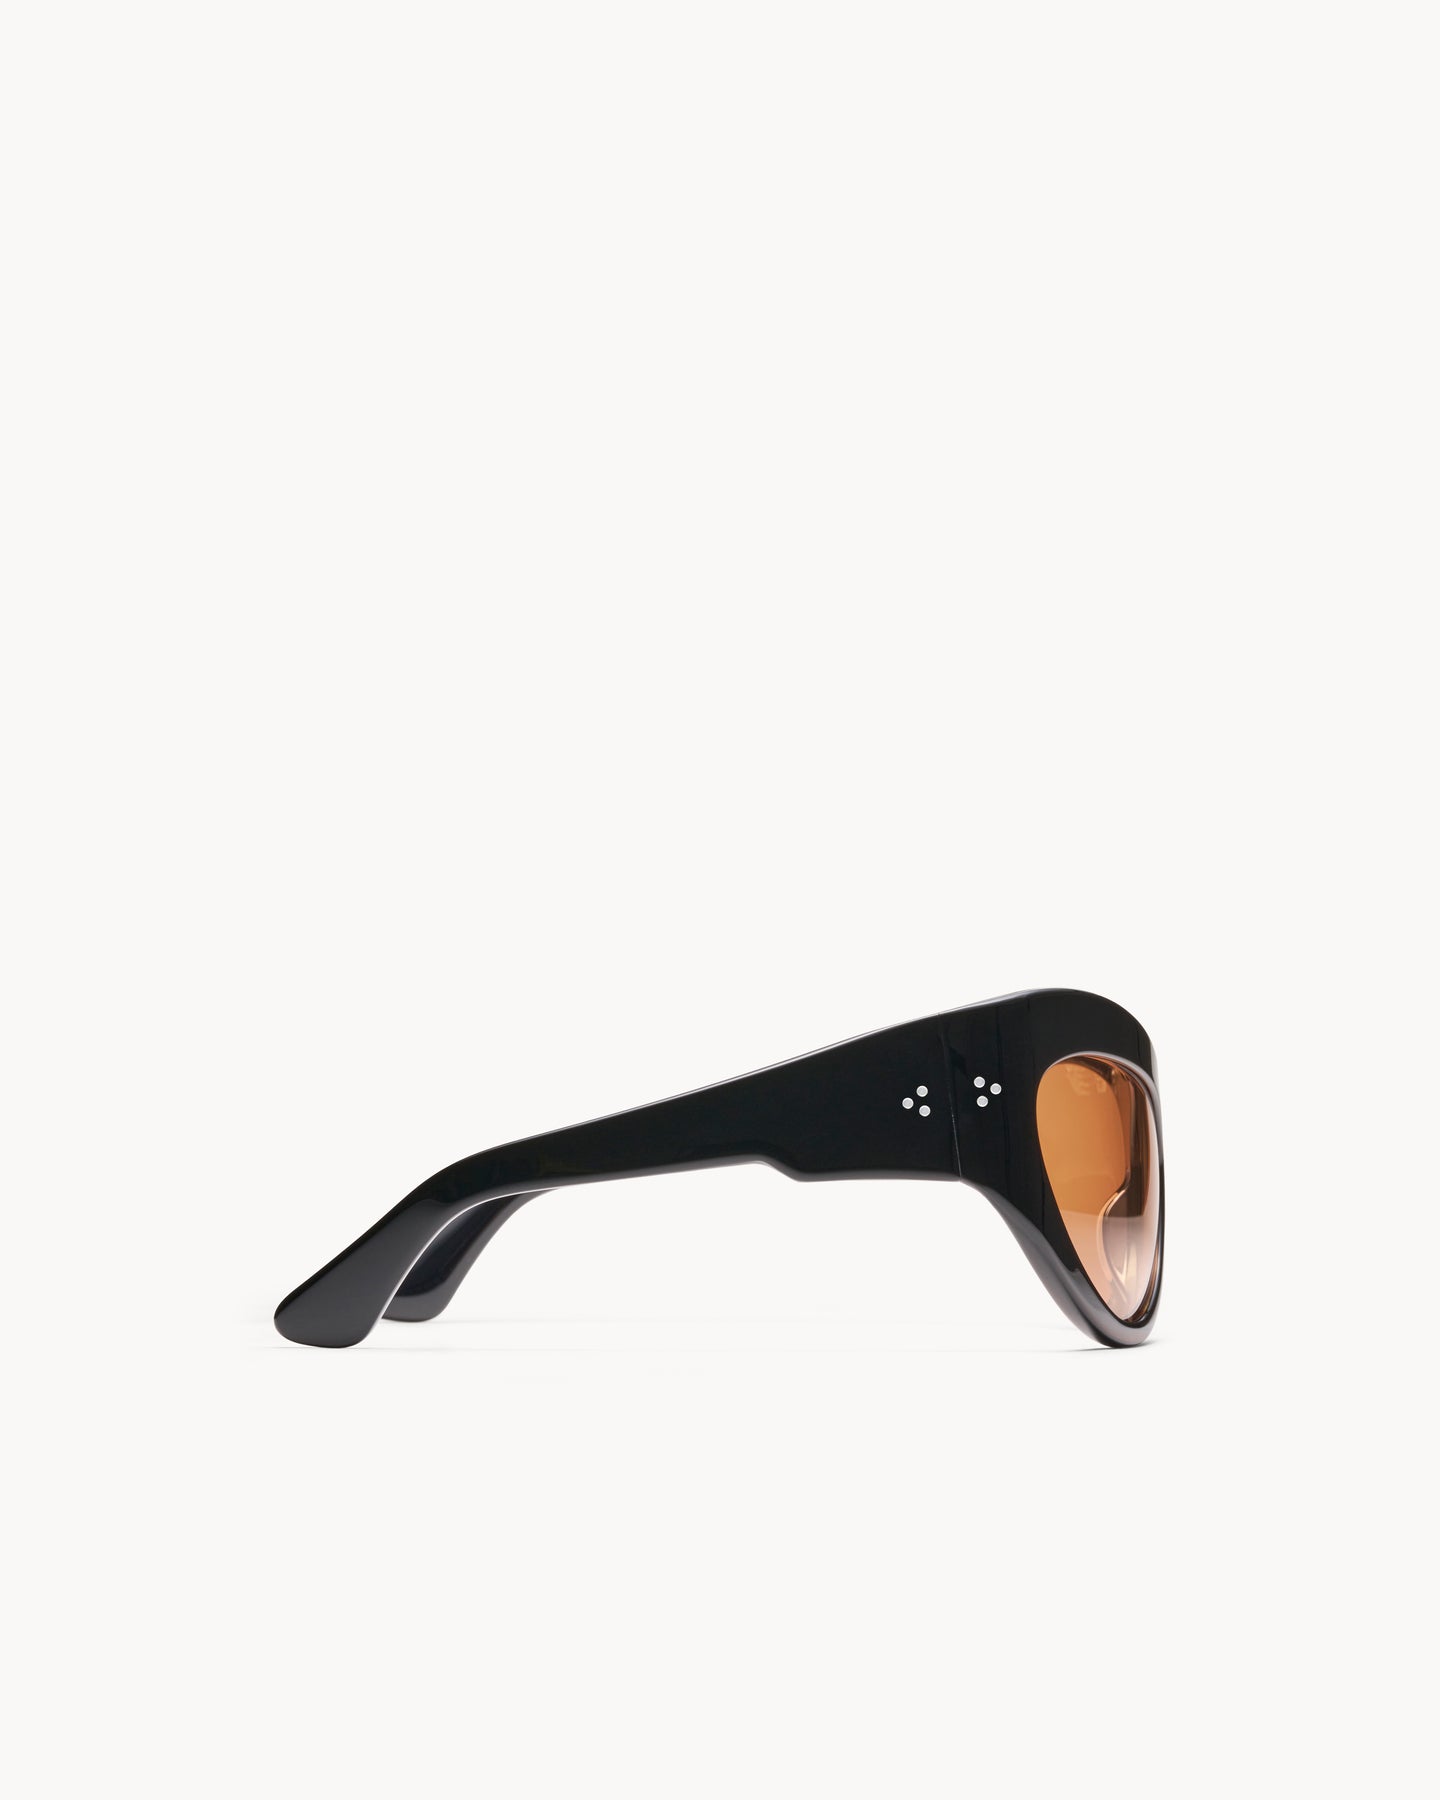 Port Tanger Darya Sunglasses in Black Acetate and Amber Lenses 4